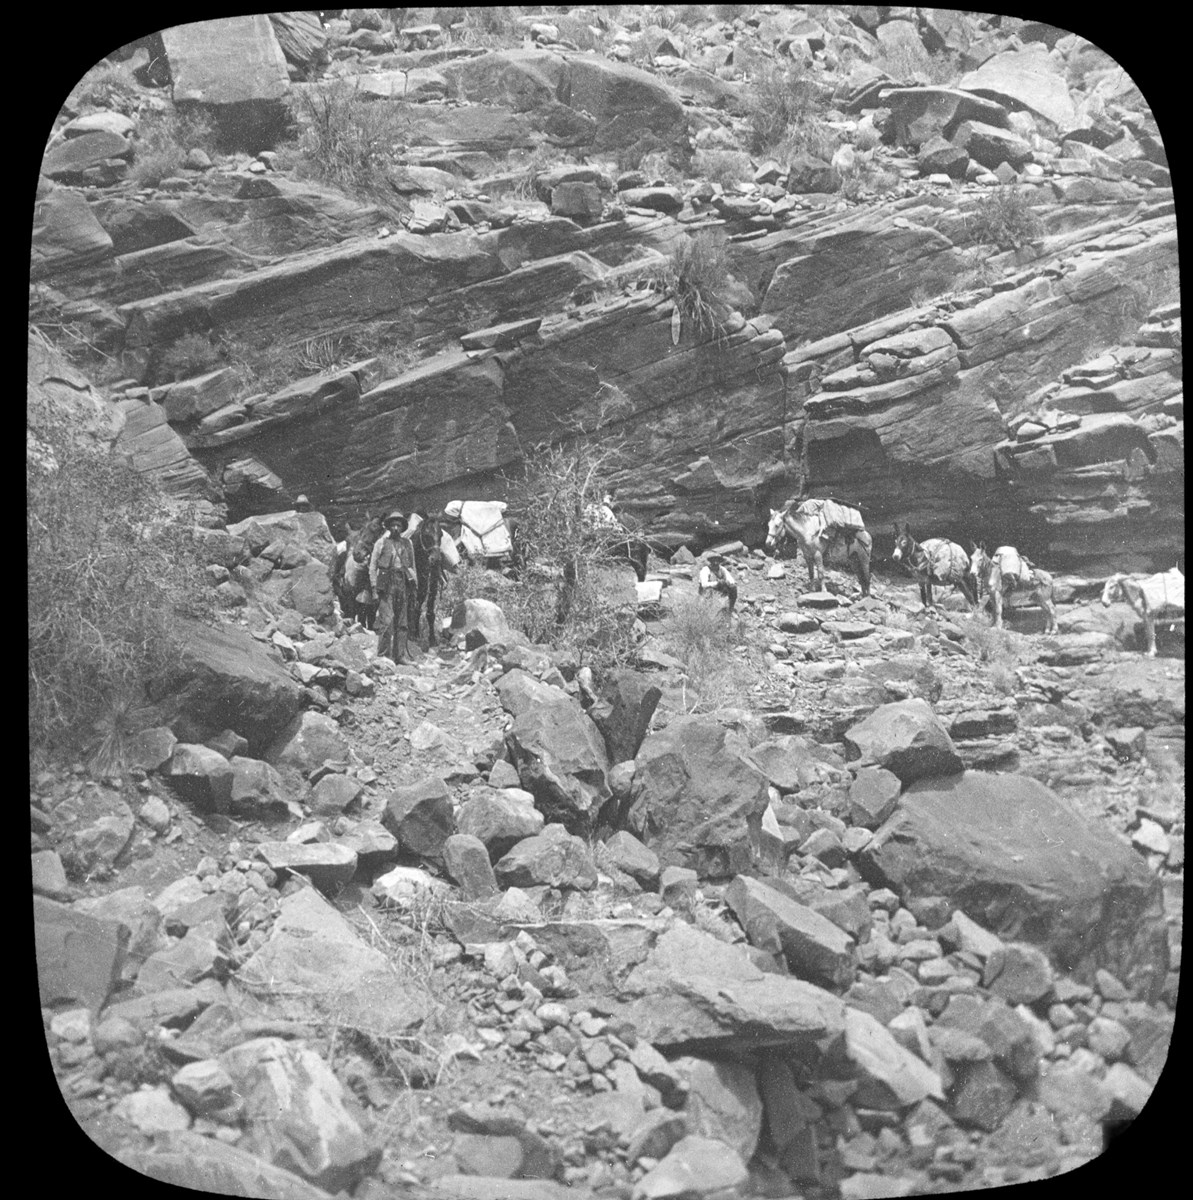 Burros lead by a pioneer walking across a rocky landscape.